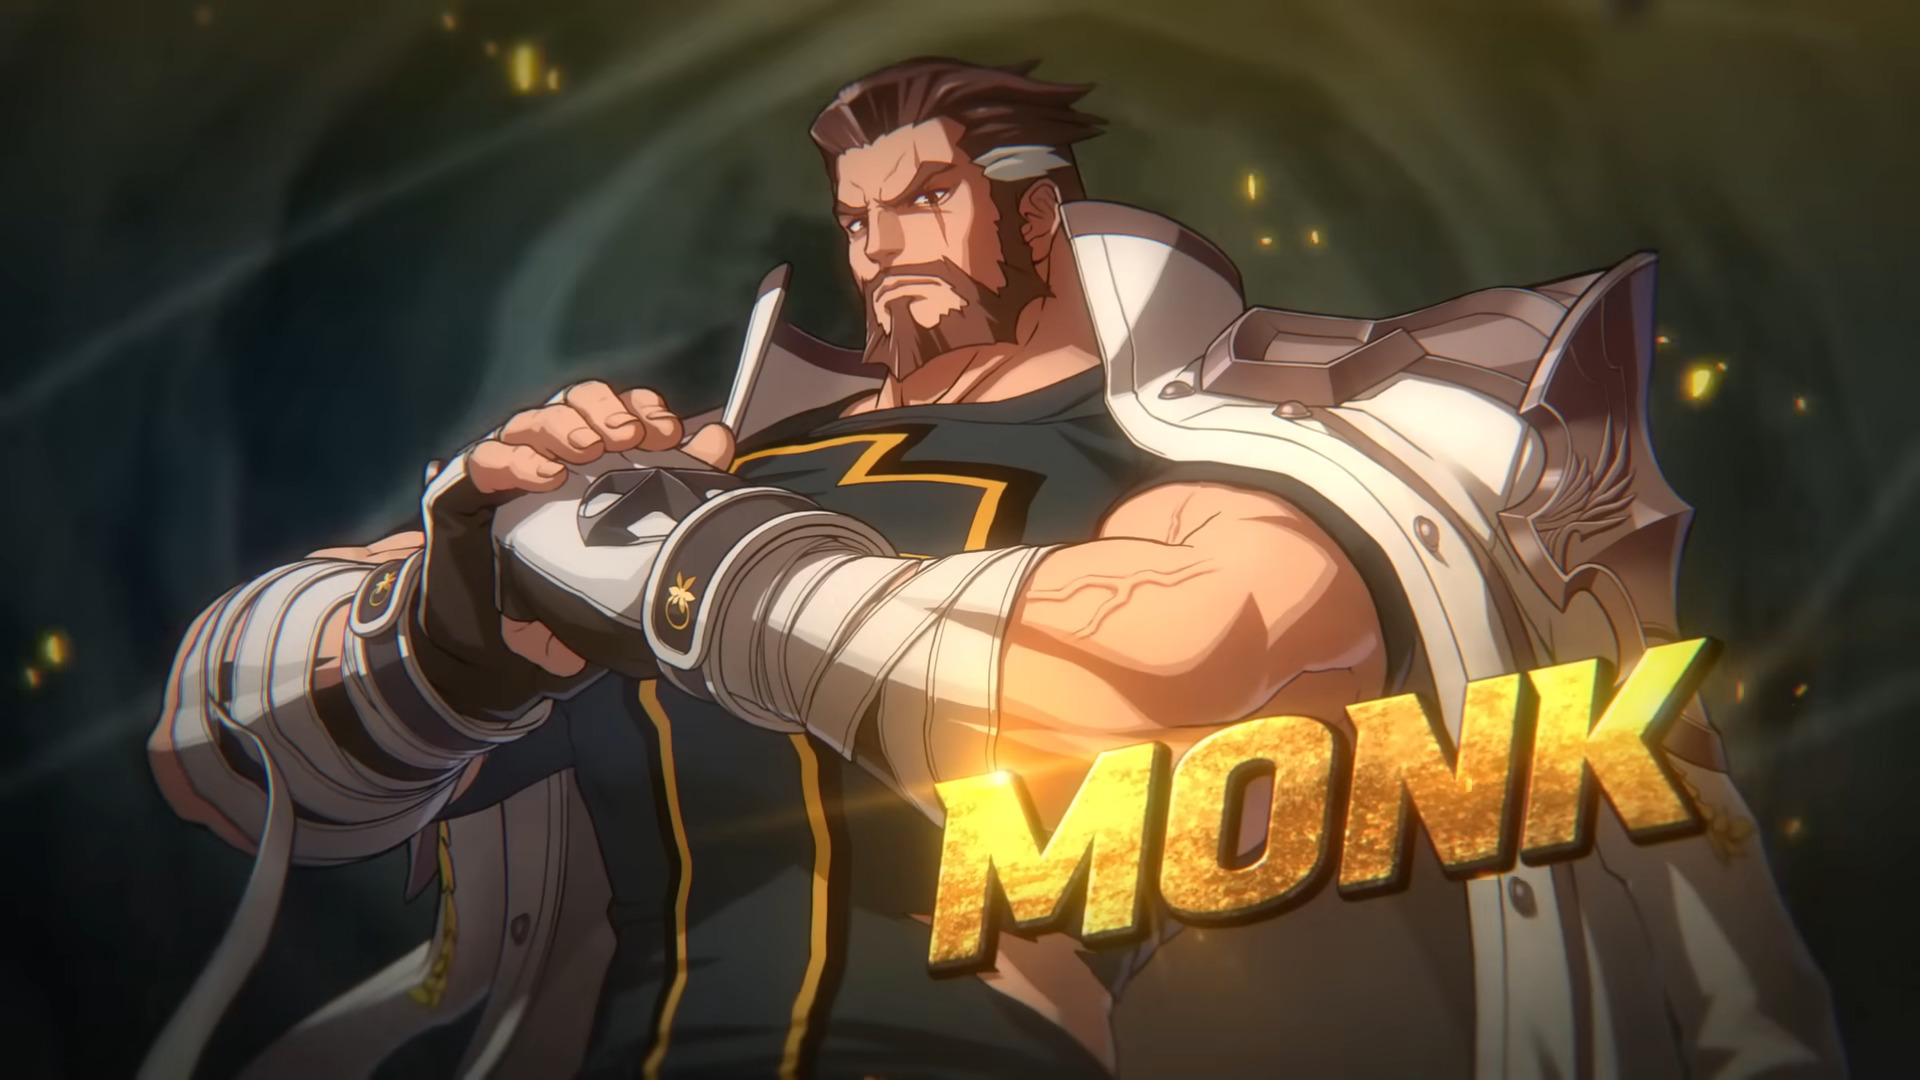 Op 14 maart wordt de vechtgame DNF Duel geüpdatet met een nieuw personage - Monk